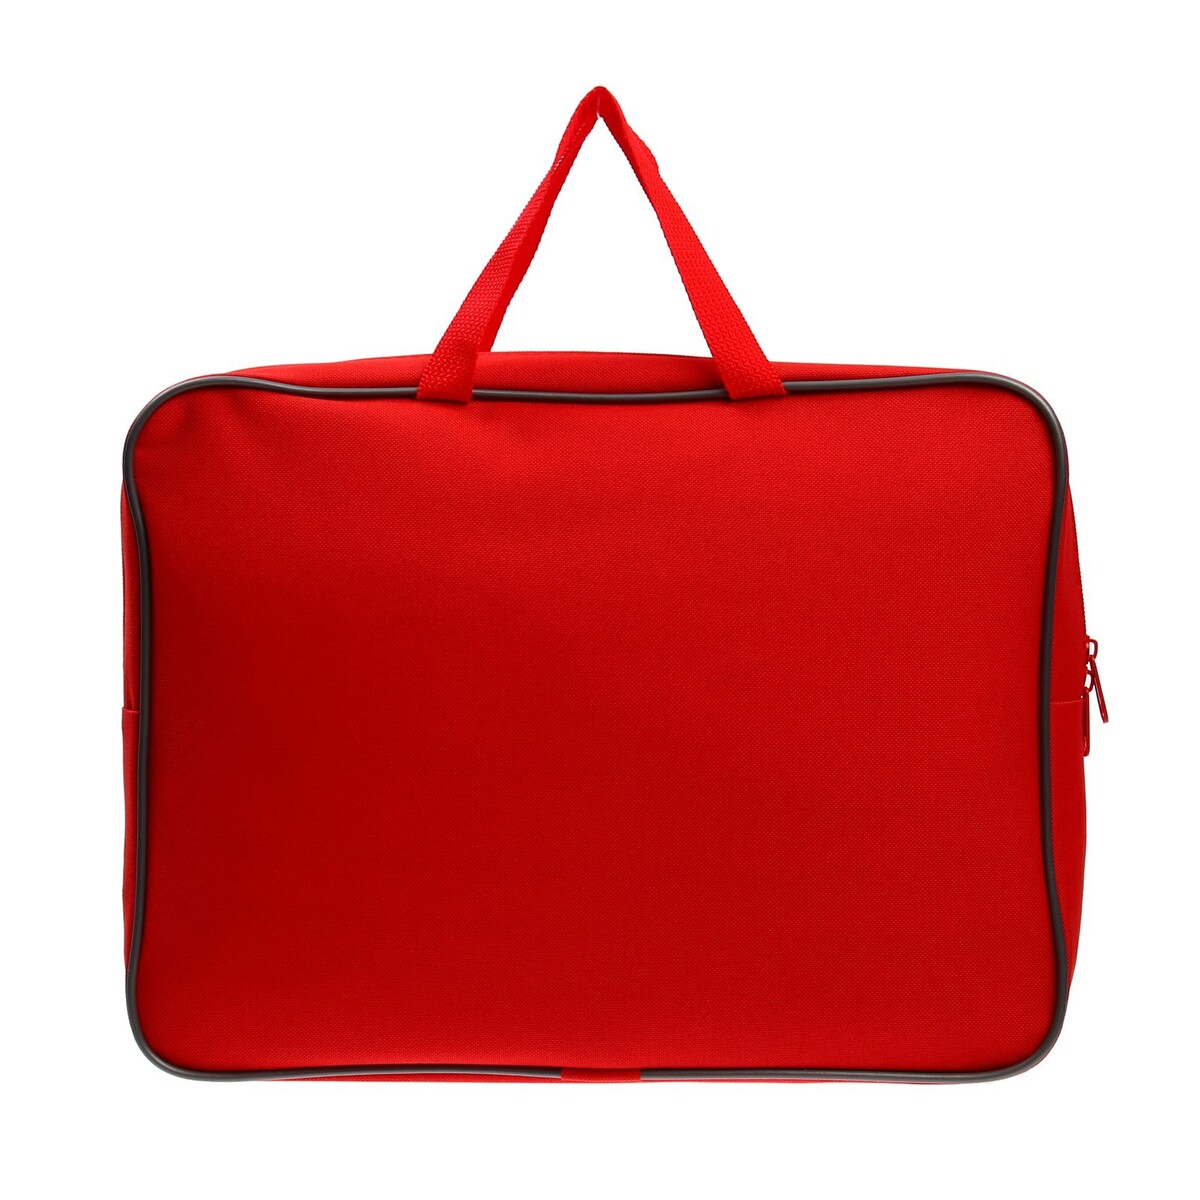 Папка с ручками а4, 360 х 270 х 80 мм, текстильная, внутренний карман, красная 1ш48 сумка текстильная одно 32 3 38 отд на молнии н карман розовый